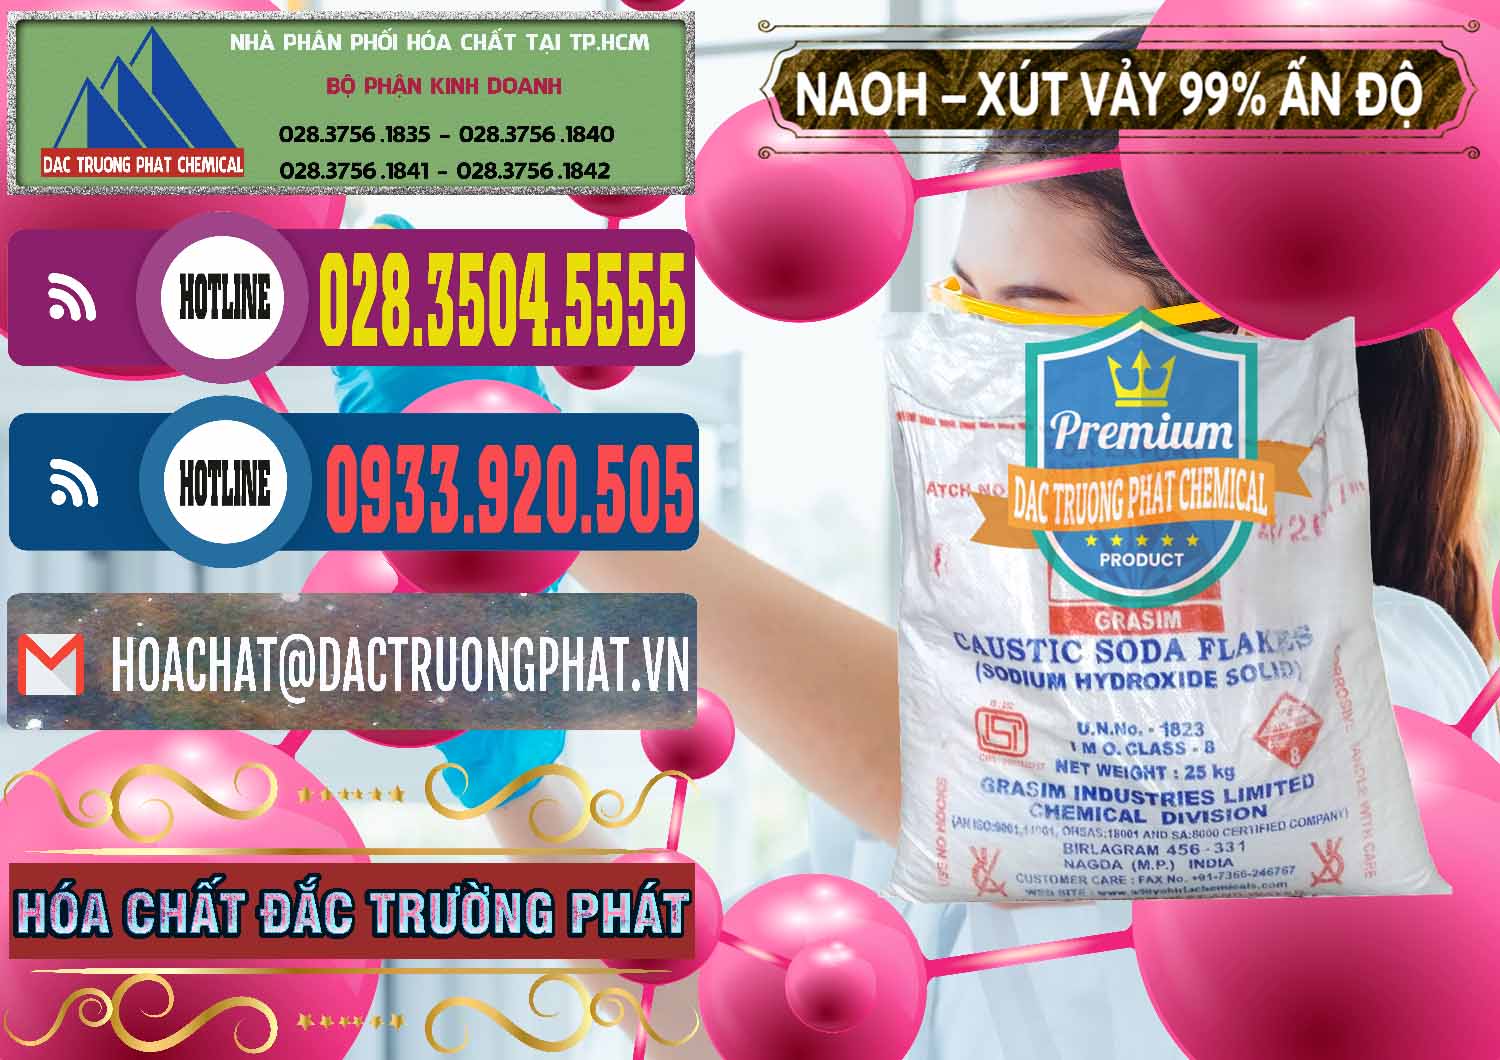 Nhà cung ứng và bán Xút Vảy - NaOH Vảy 99% Aditya Birla Grasim Ấn Độ India - 0171 - Công ty nhập khẩu & cung cấp hóa chất tại TP.HCM - muabanhoachat.com.vn